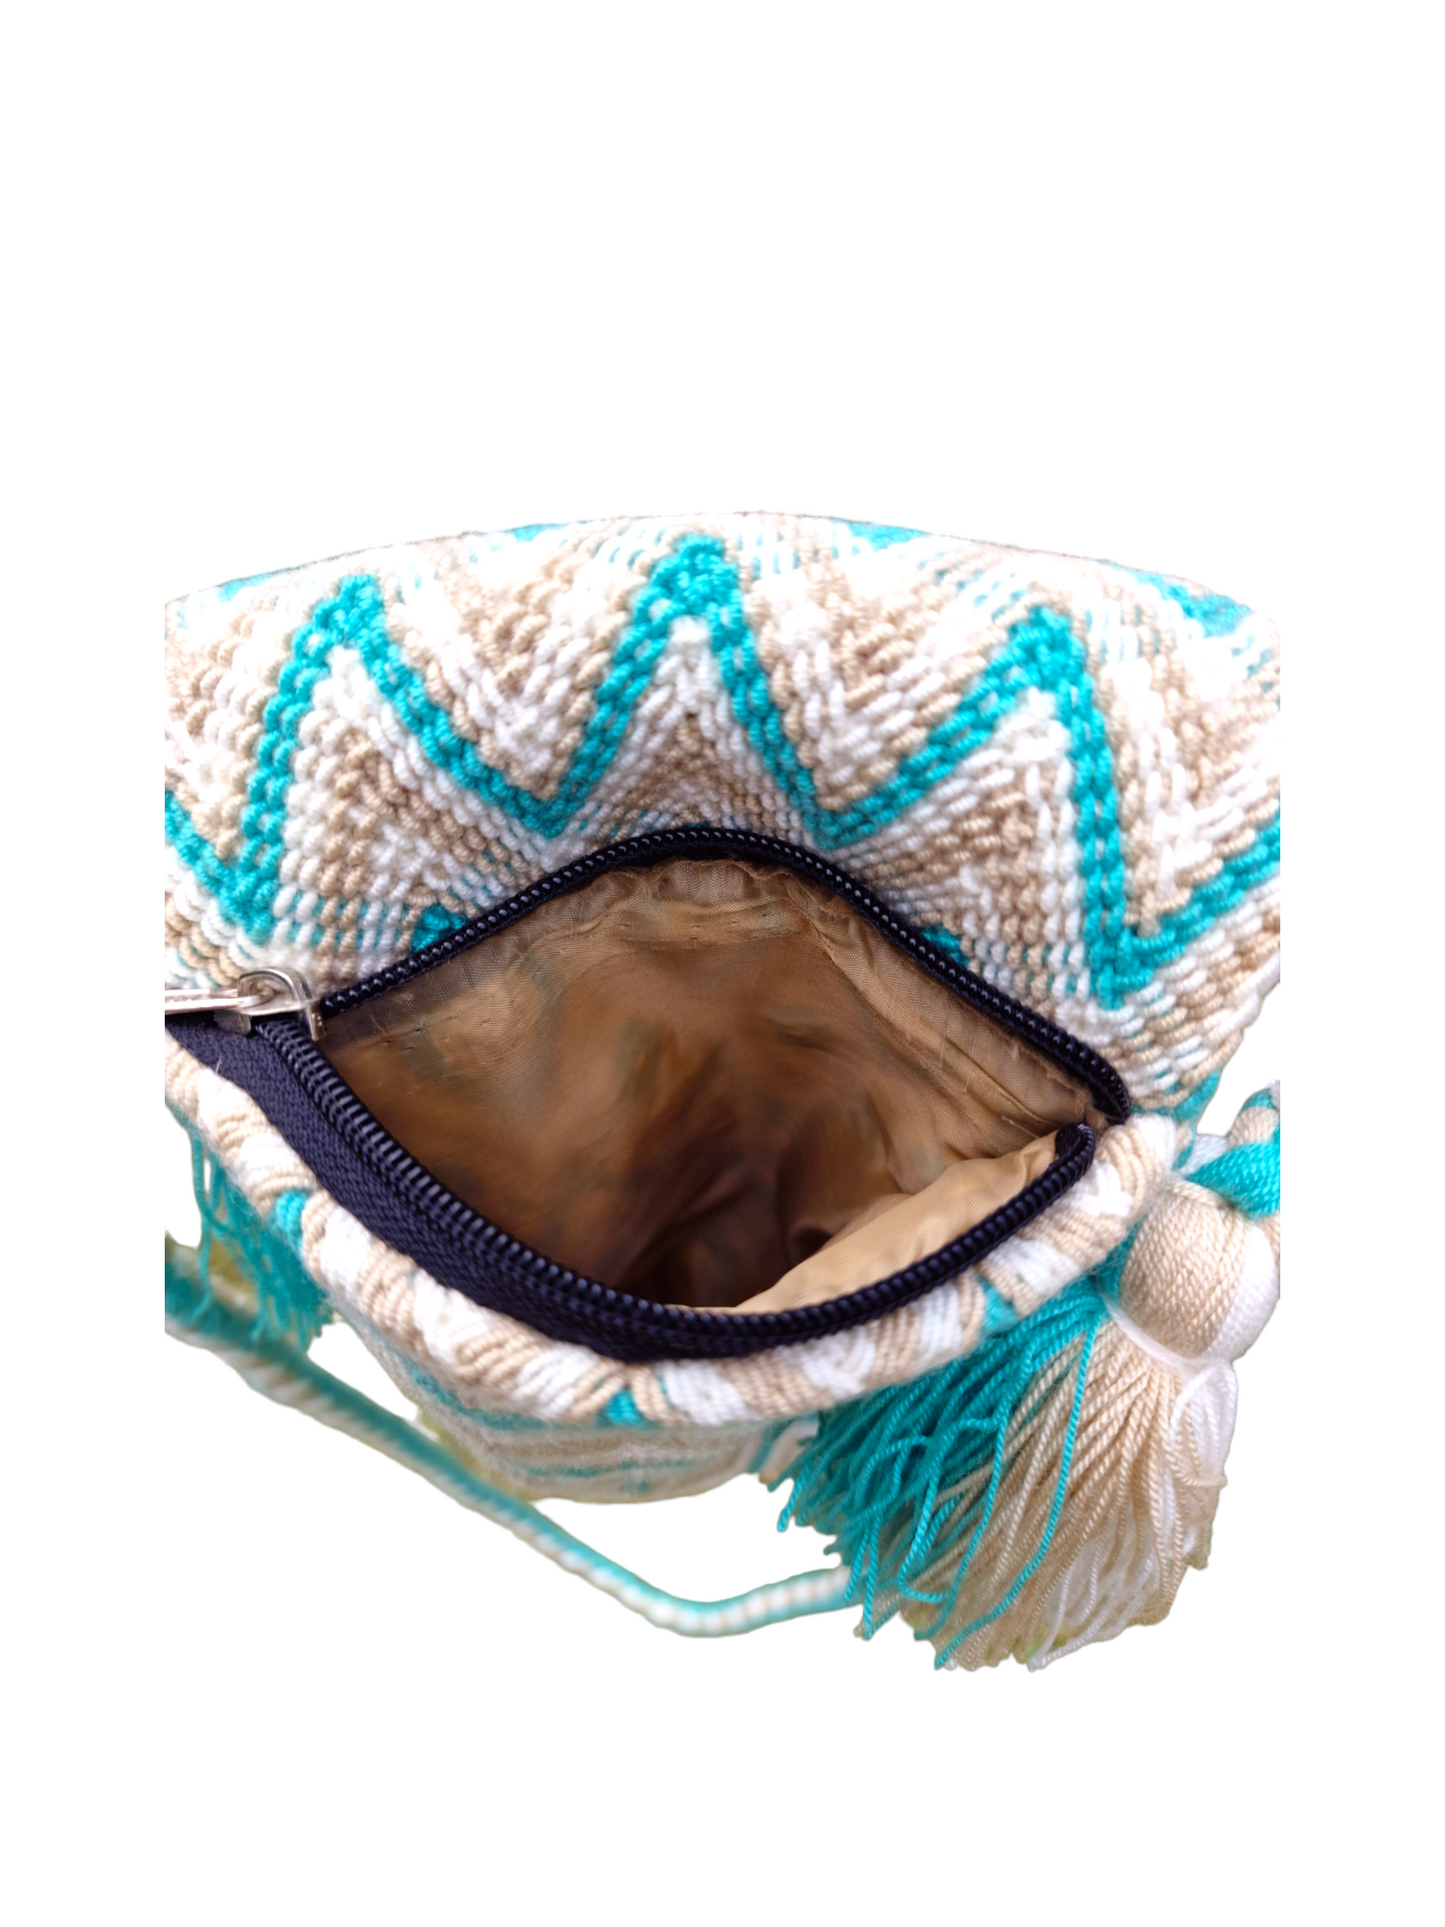 Original Wayuu-Tasche mit Futter und Polsterung für Handy - Handy-Mochilatasche